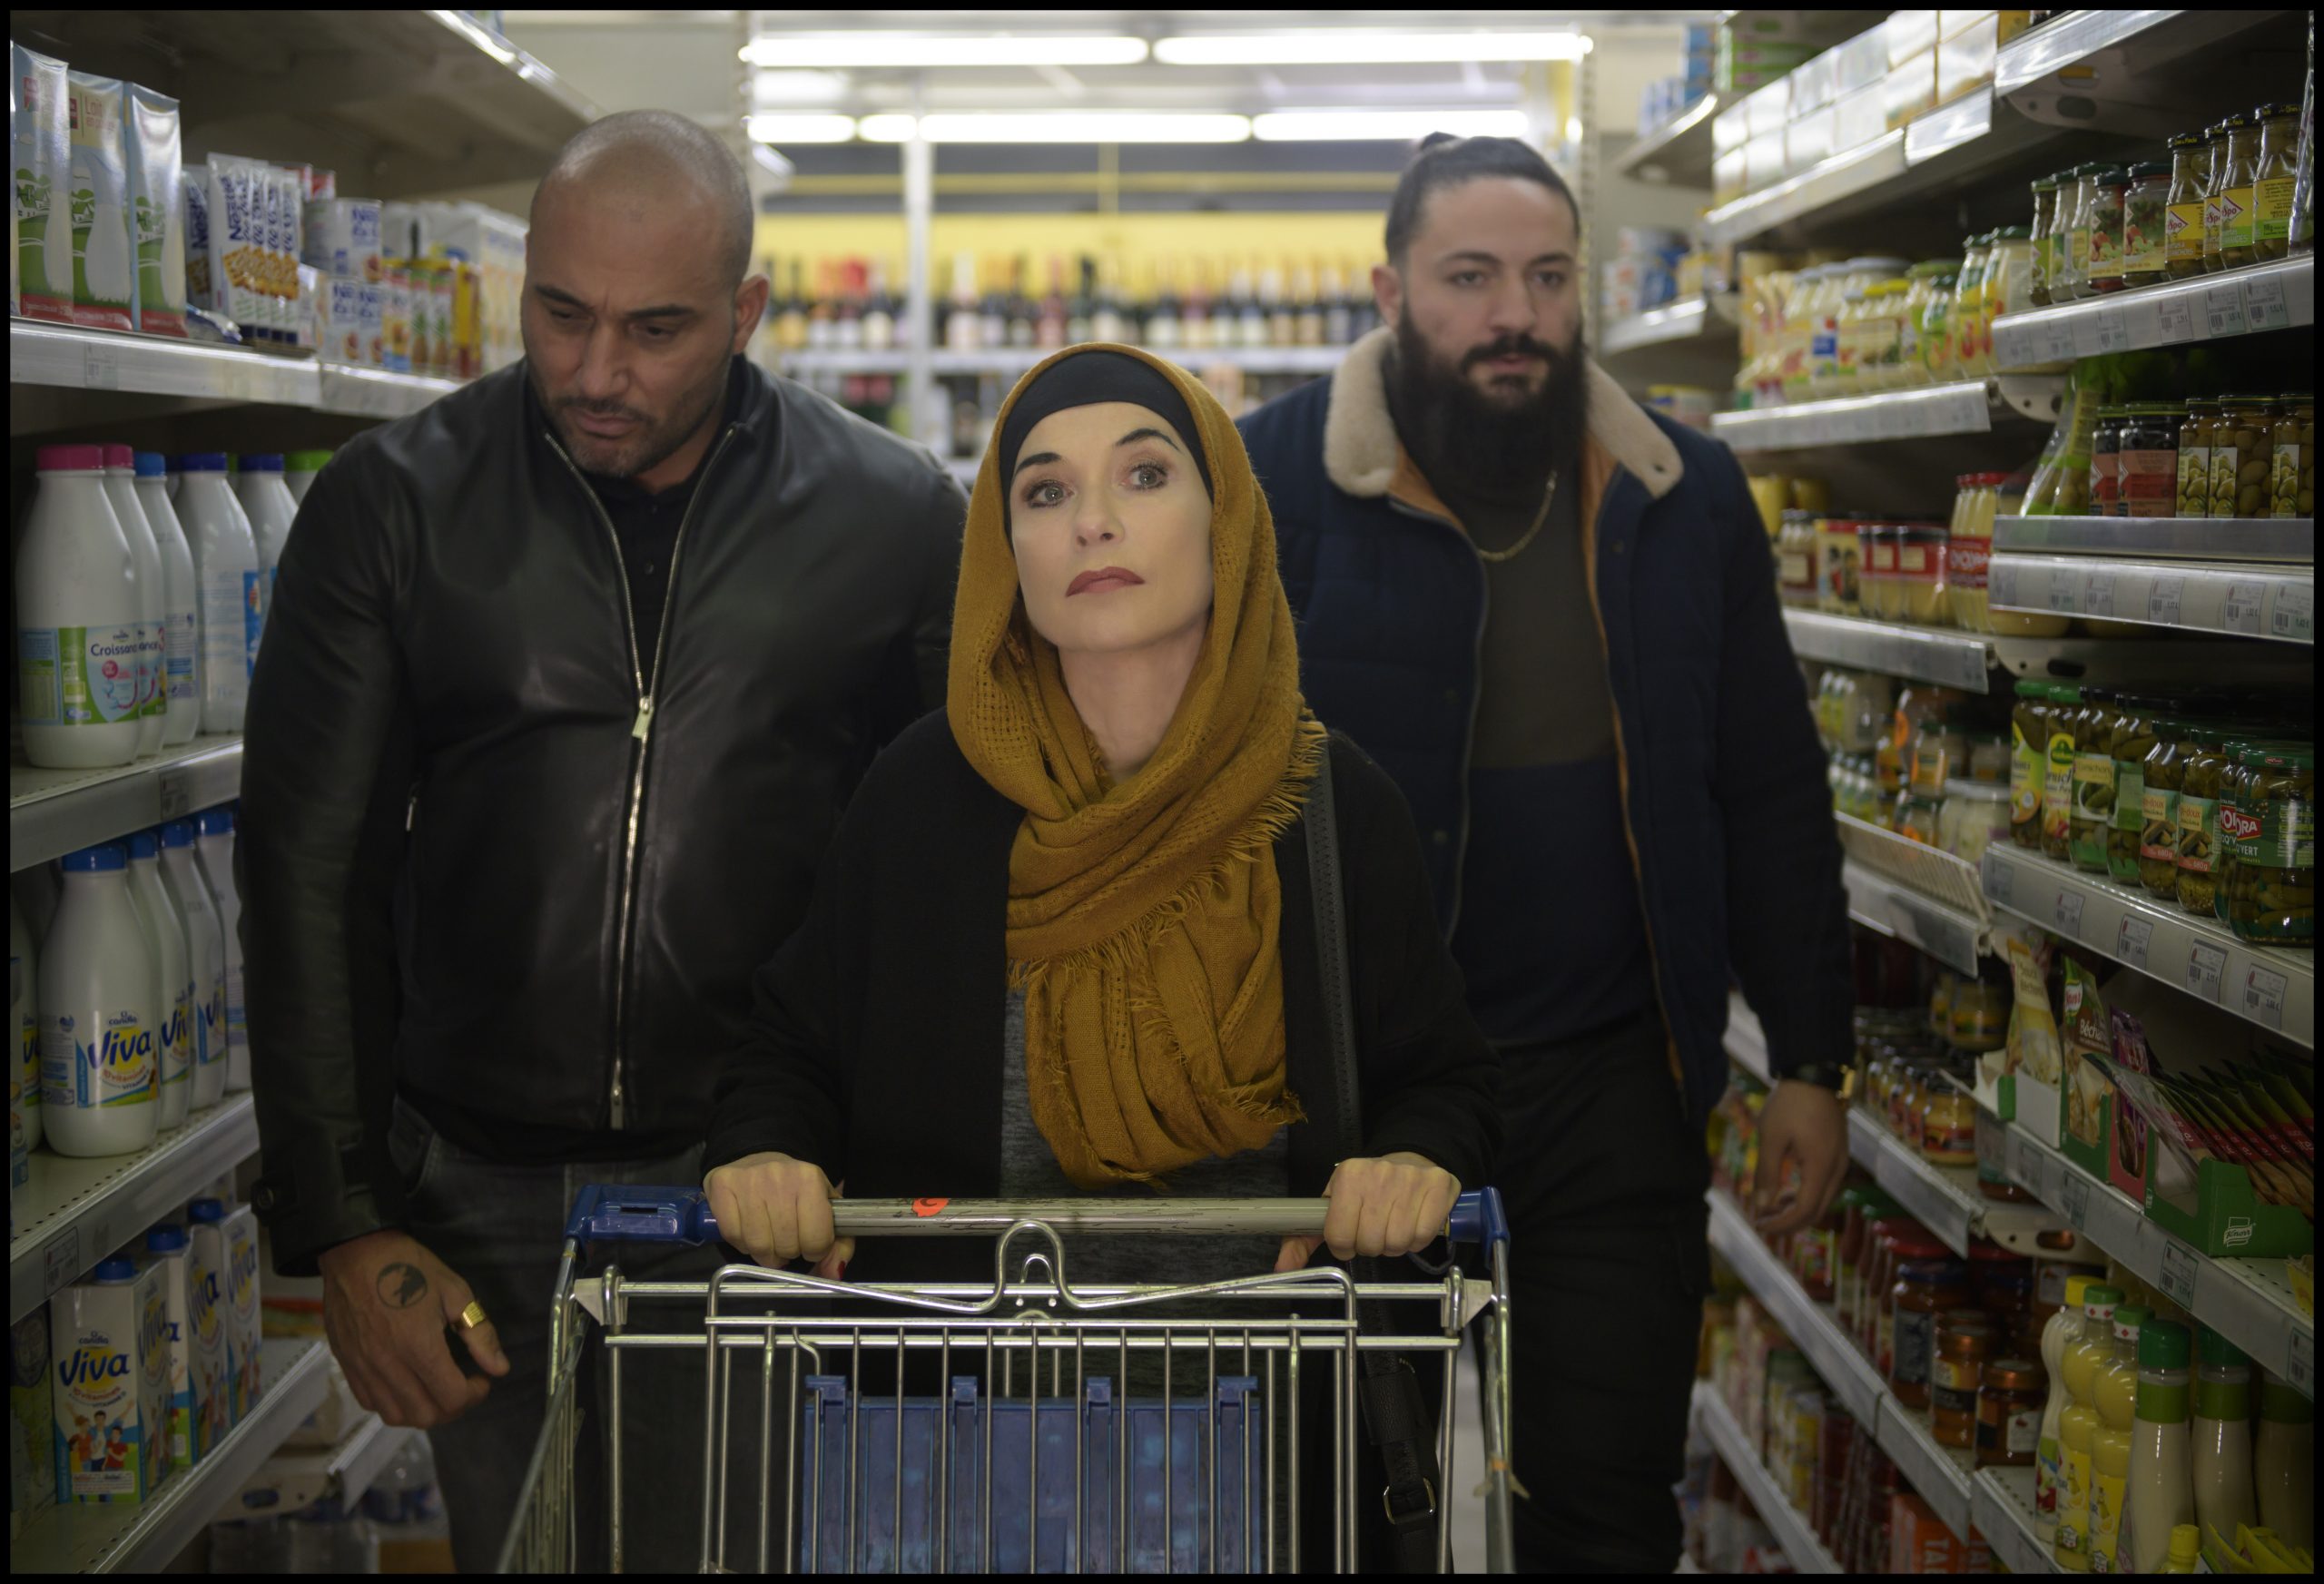 Eine dunkel geschminkte Frau mit Kopftuch, begleitet von zwei südländisch aussehenden Männern, schiebt einen Einkaufswagen durch einen Supermarkt.